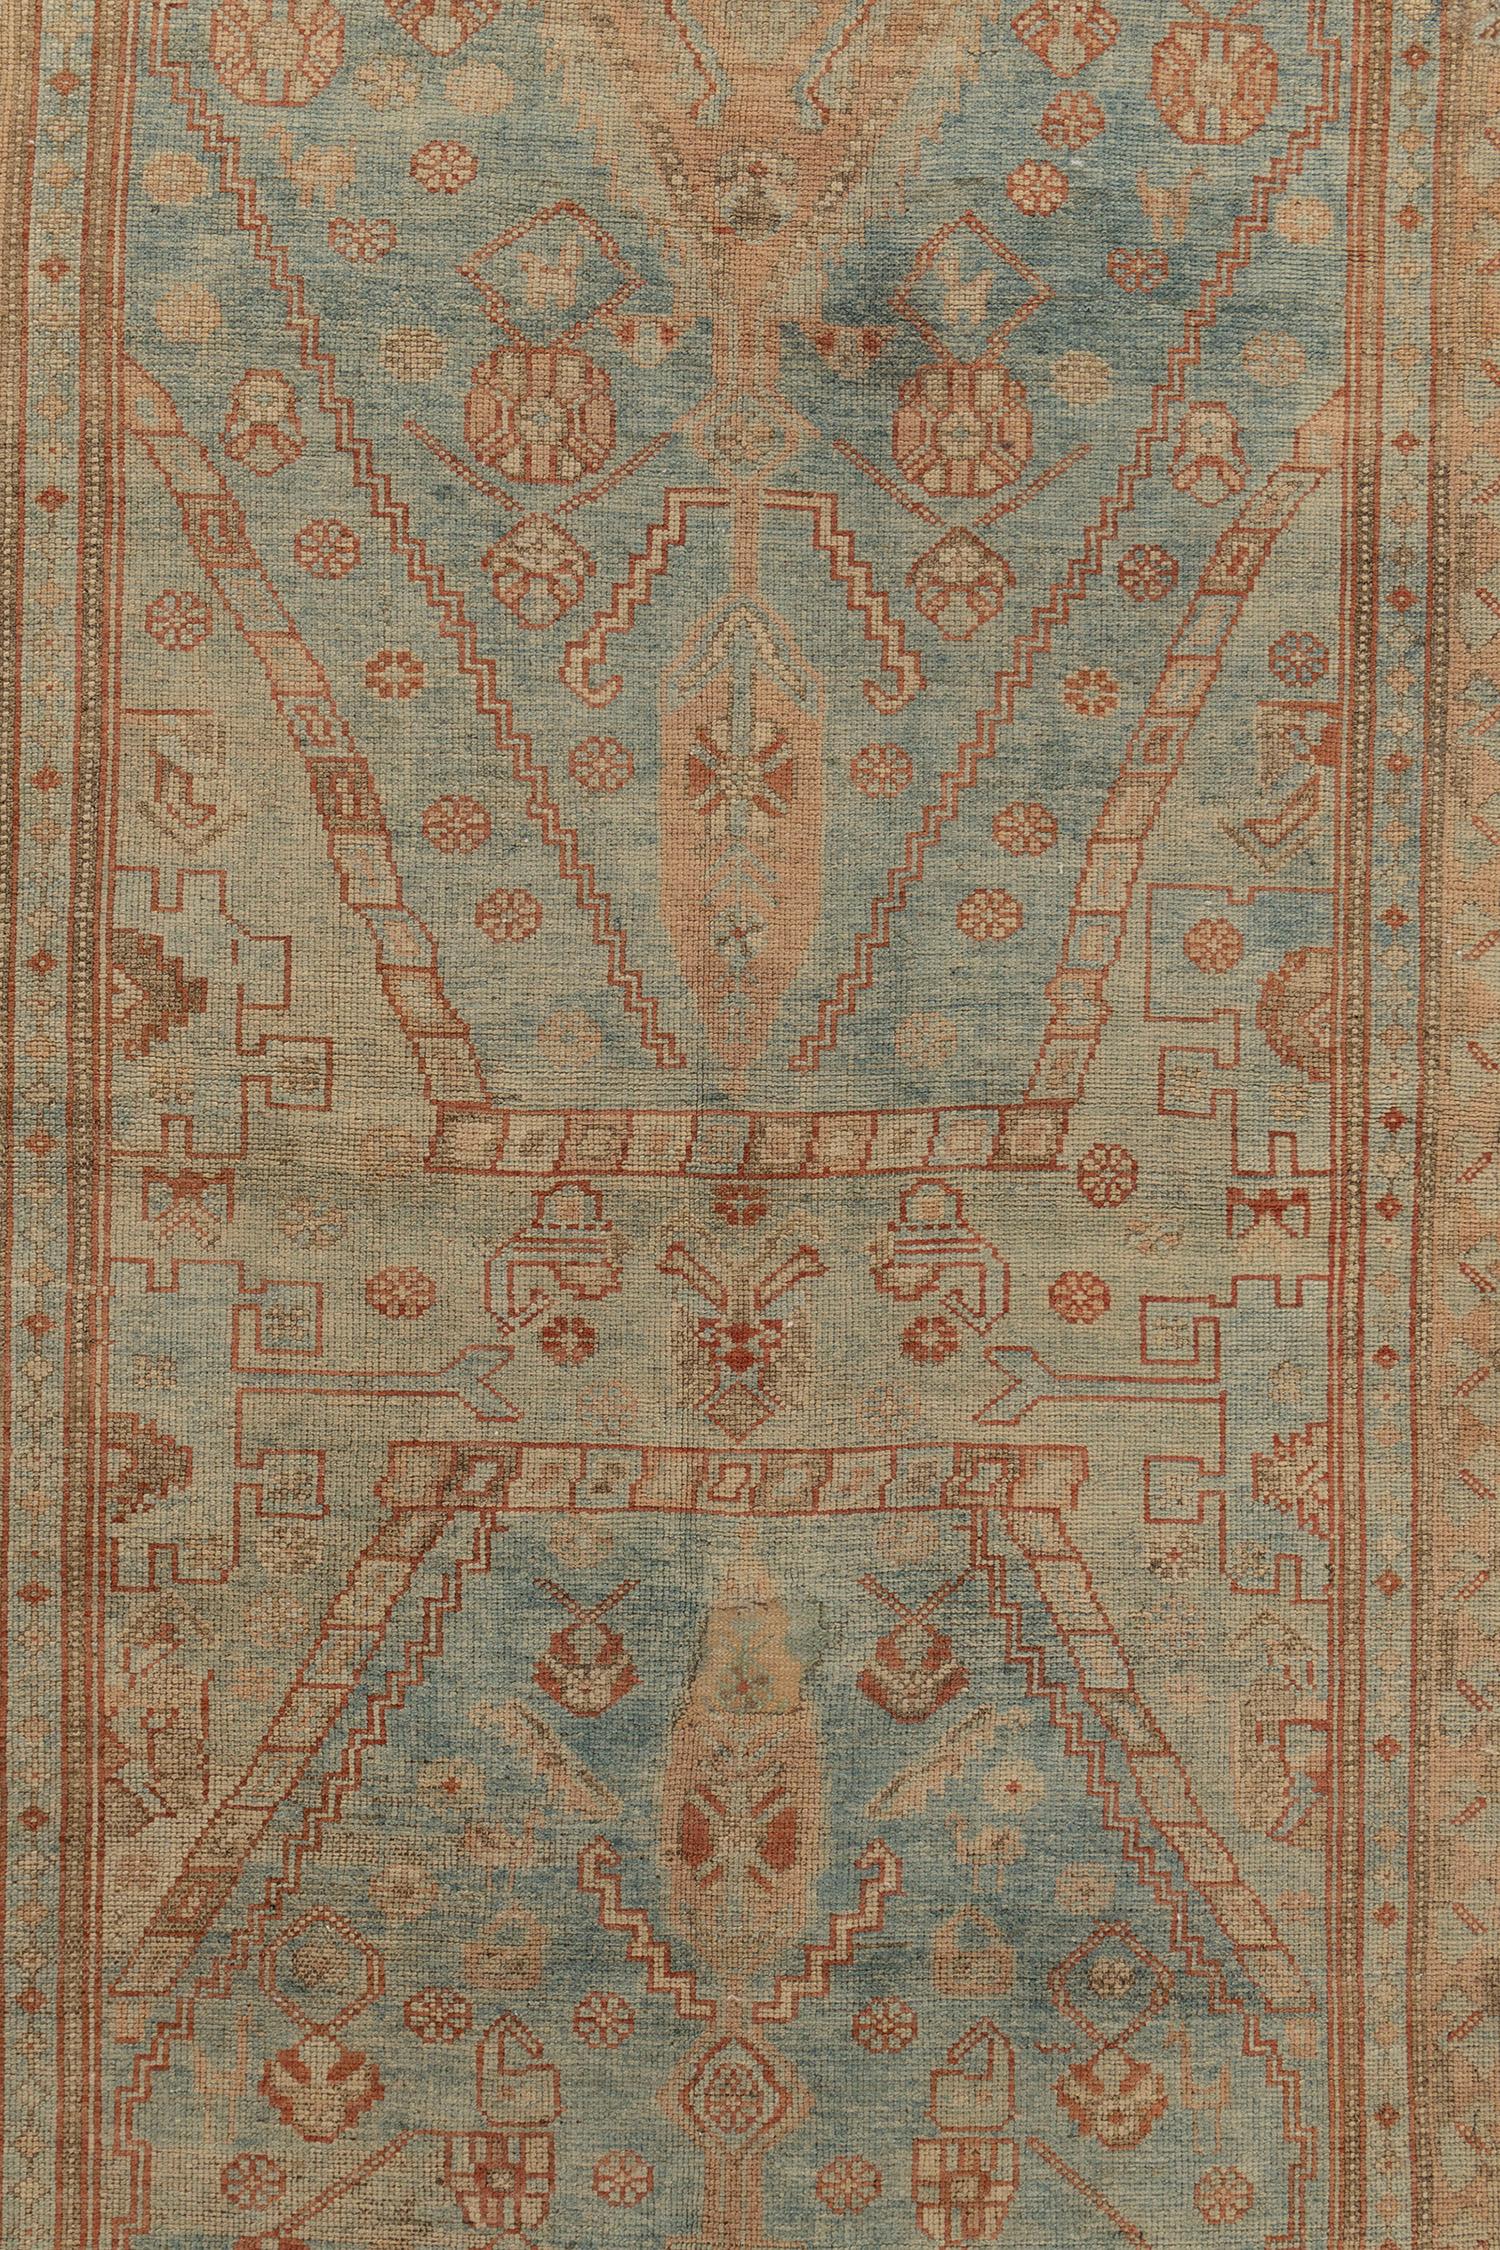 Chemin de table antique Qashgai 4' X 14'5. Un magnifique chemin de table en laine nouée à la main. Les Qashgai constituent le groupe nomade le plus important et le plus influent de la province de Fars (sud-ouest de l'Iran). Les différentes